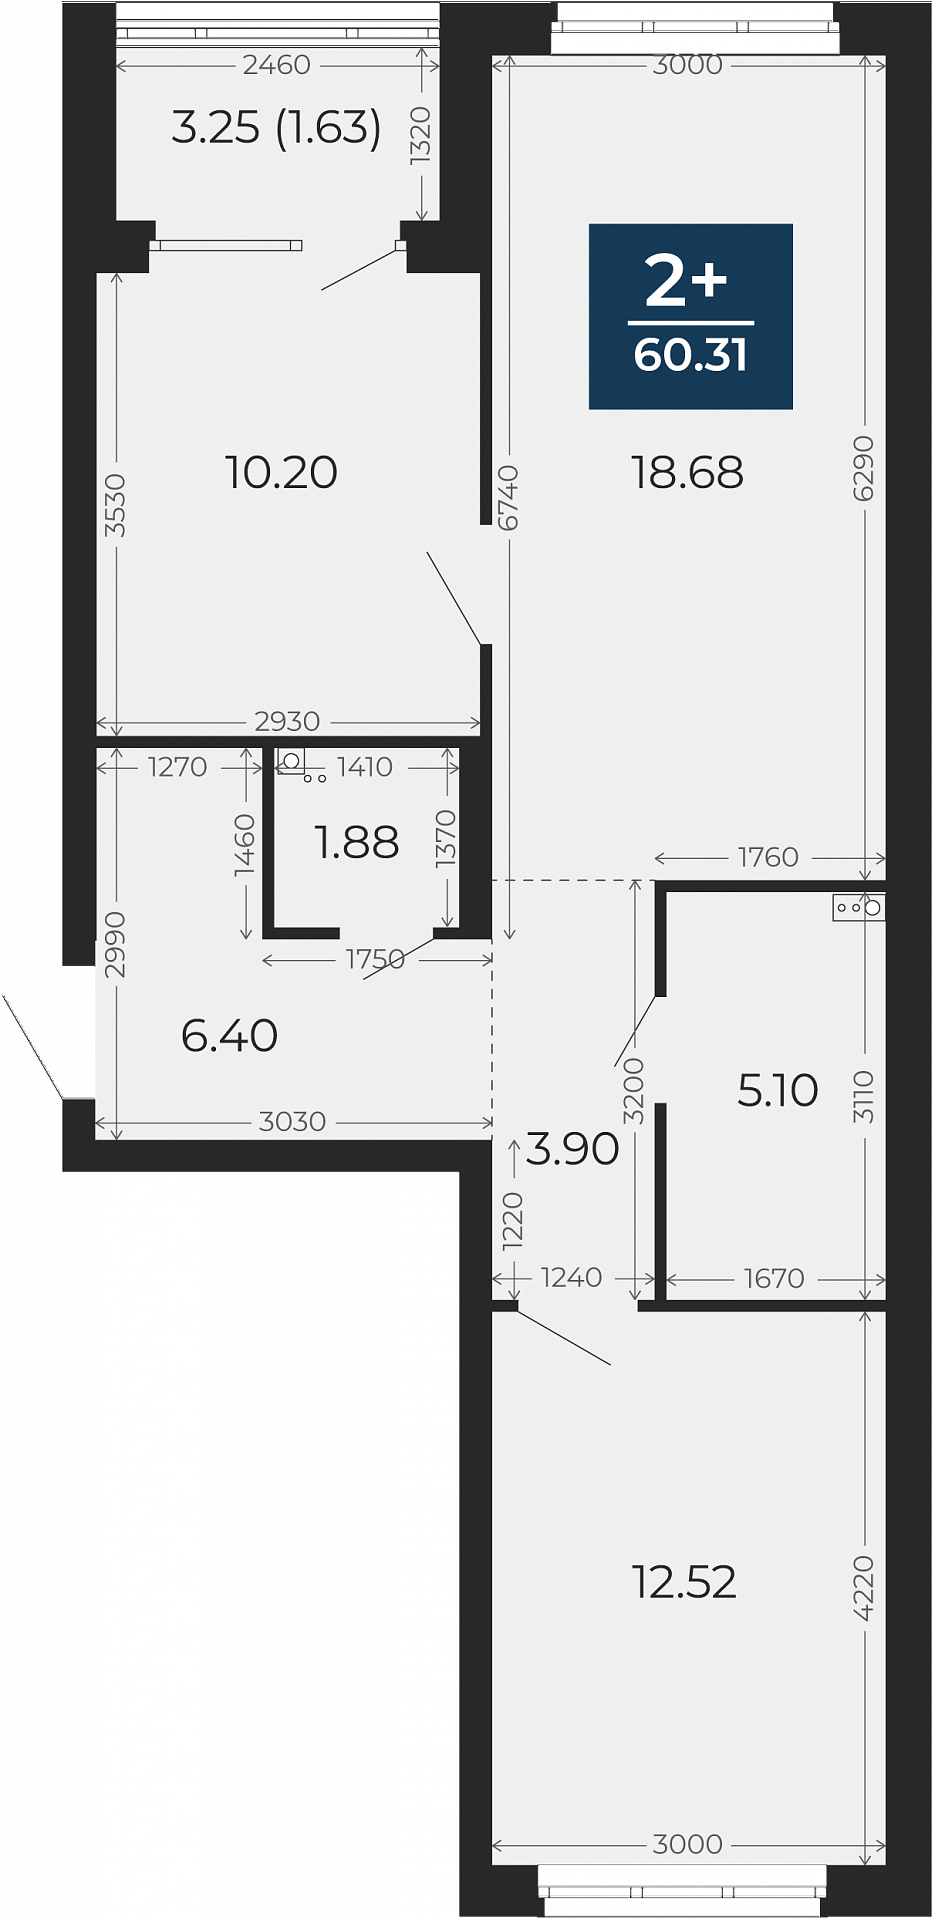 Квартира № 48, 2-комнатная, 60.31 кв. м, 2 этаж